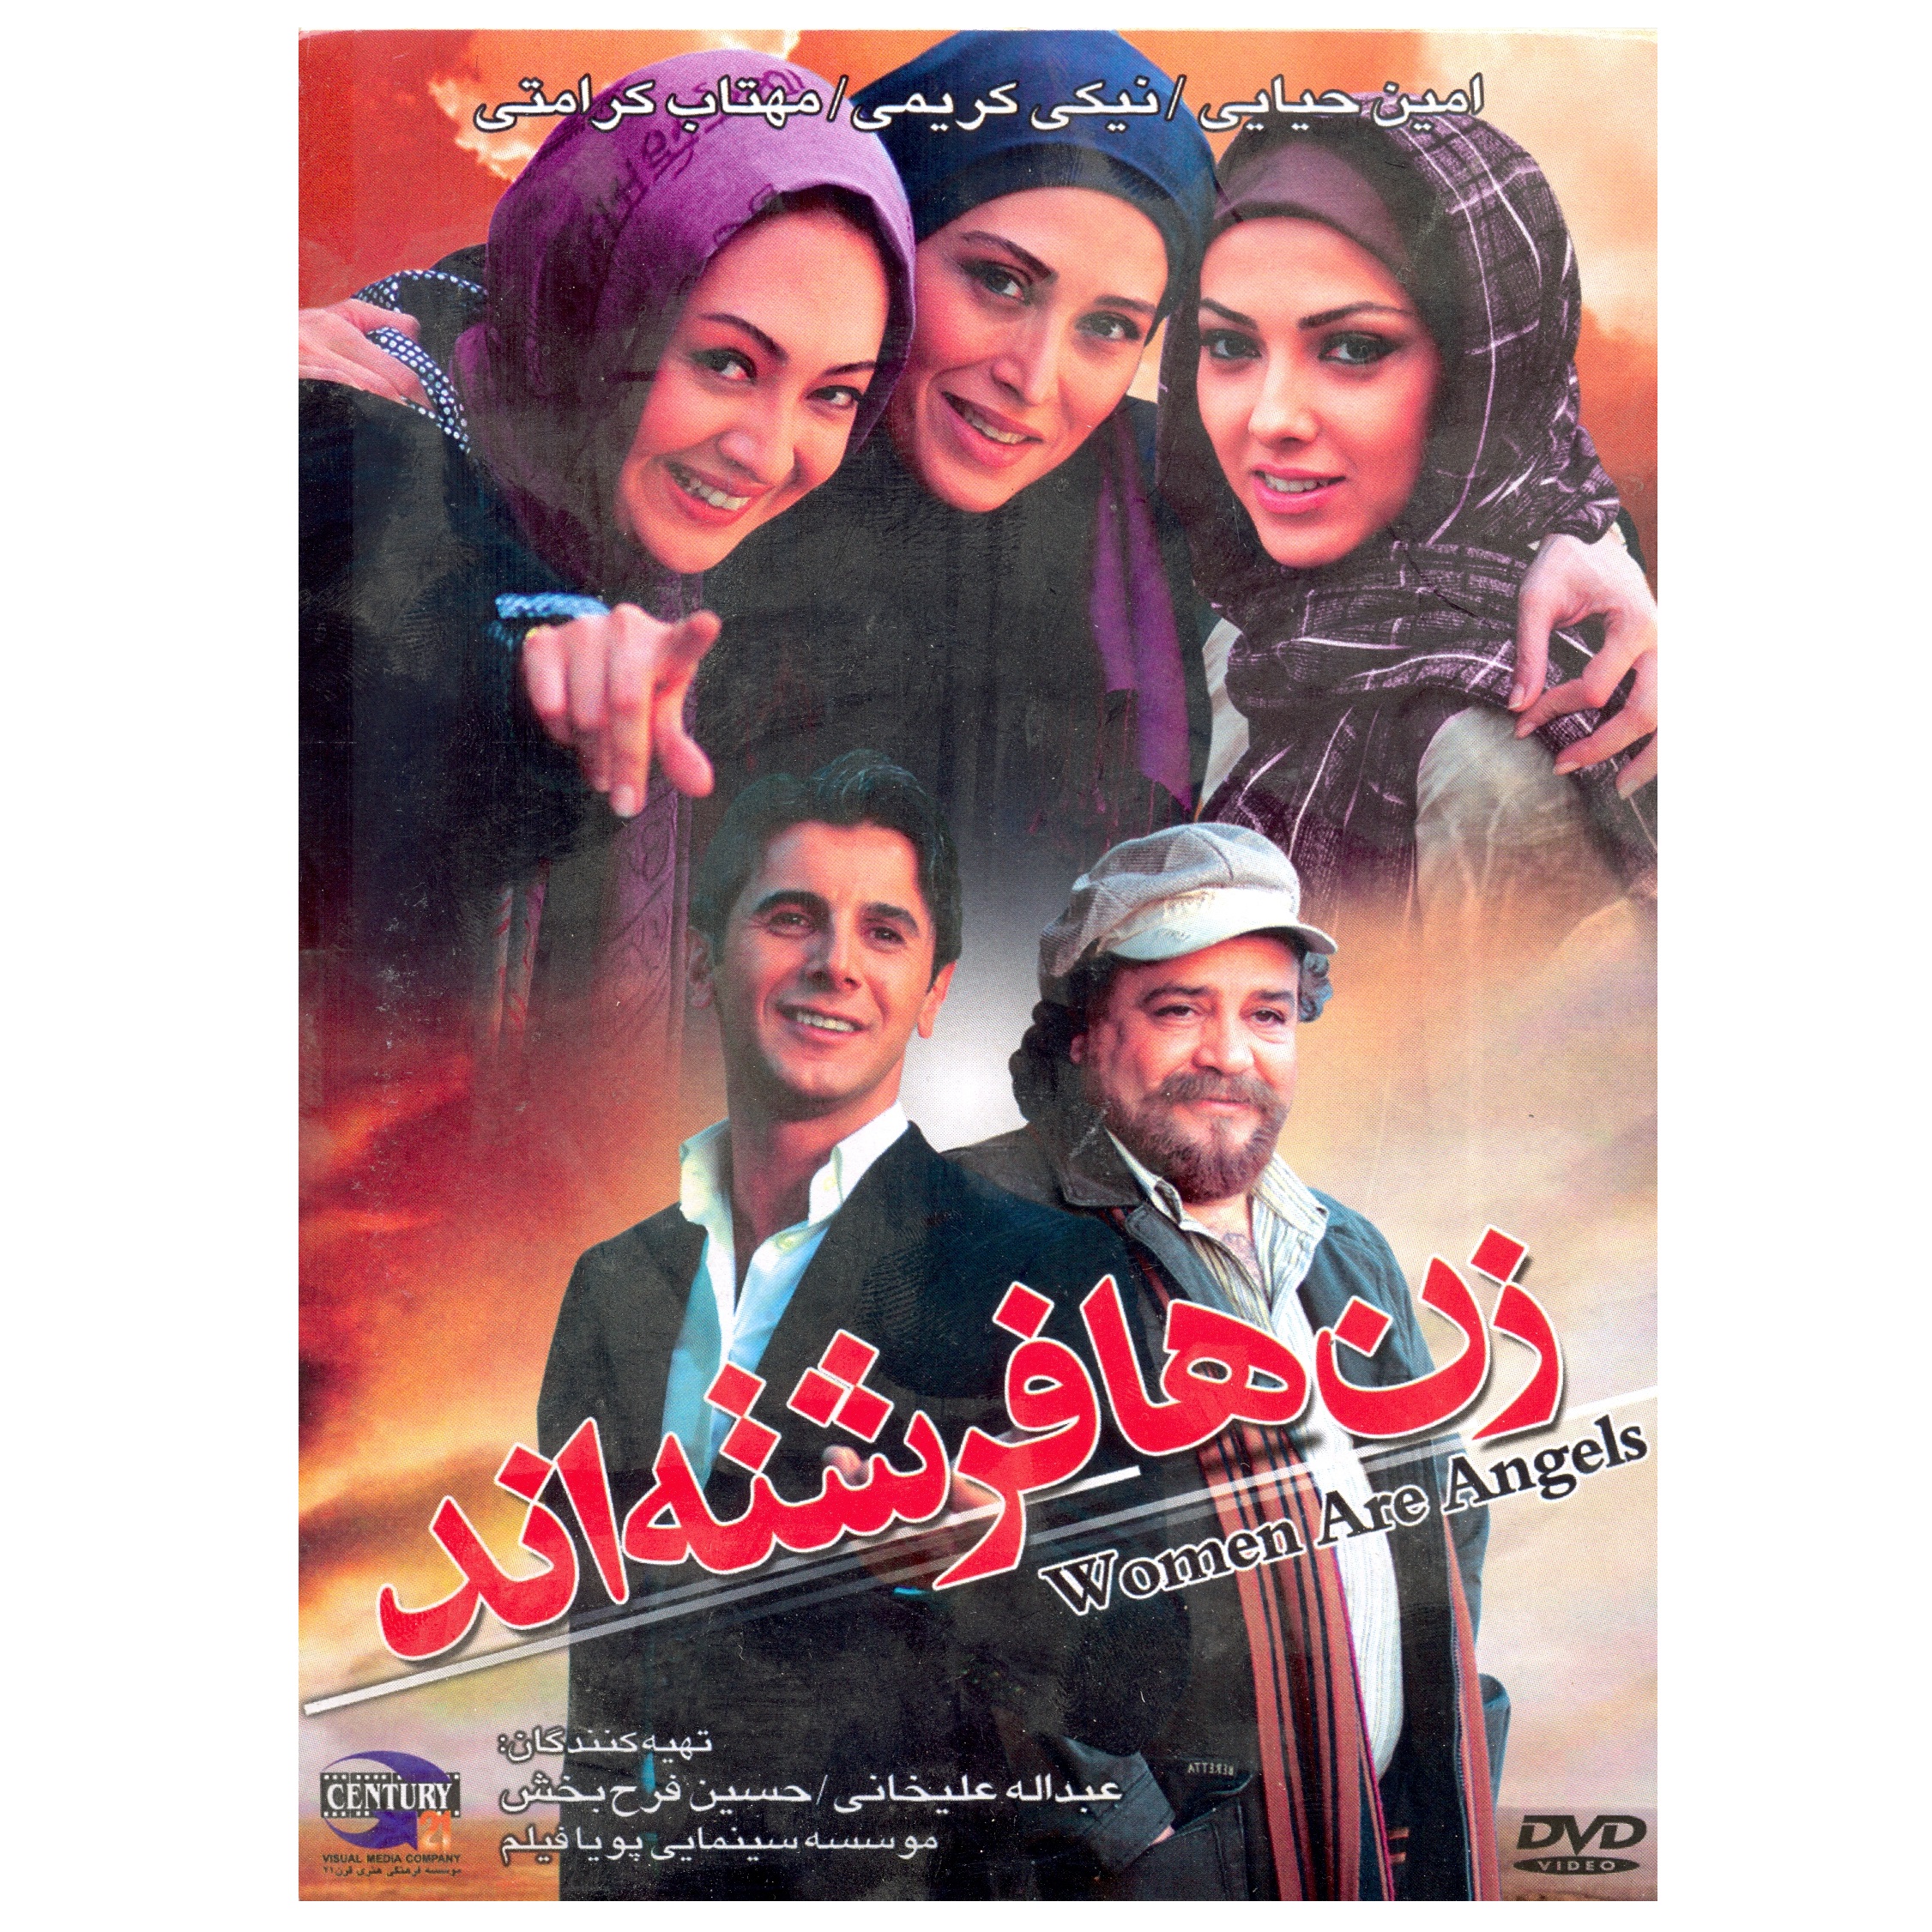 فیلم سینمایی زن ها فرشته اند اثر شهرام شاه حسینی انتشارات قرن 21